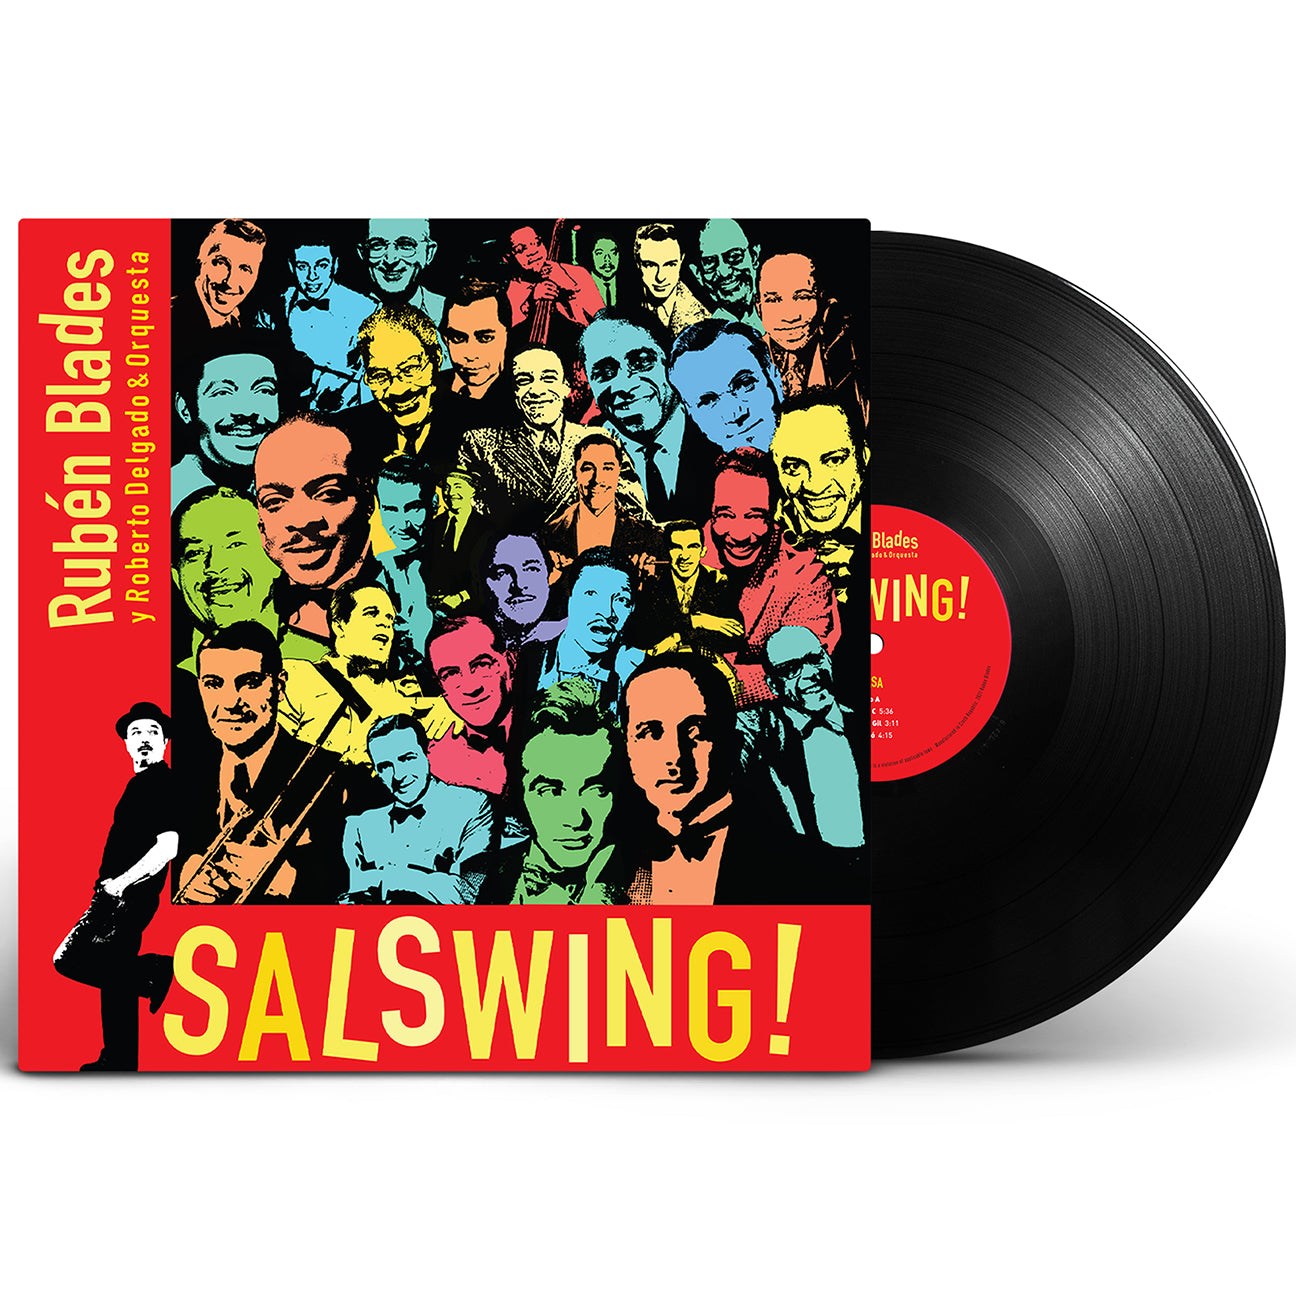 Rubén Blades con Roberto Delgado y Orquesta - "SALSWING!" | 2xLP Vinyl